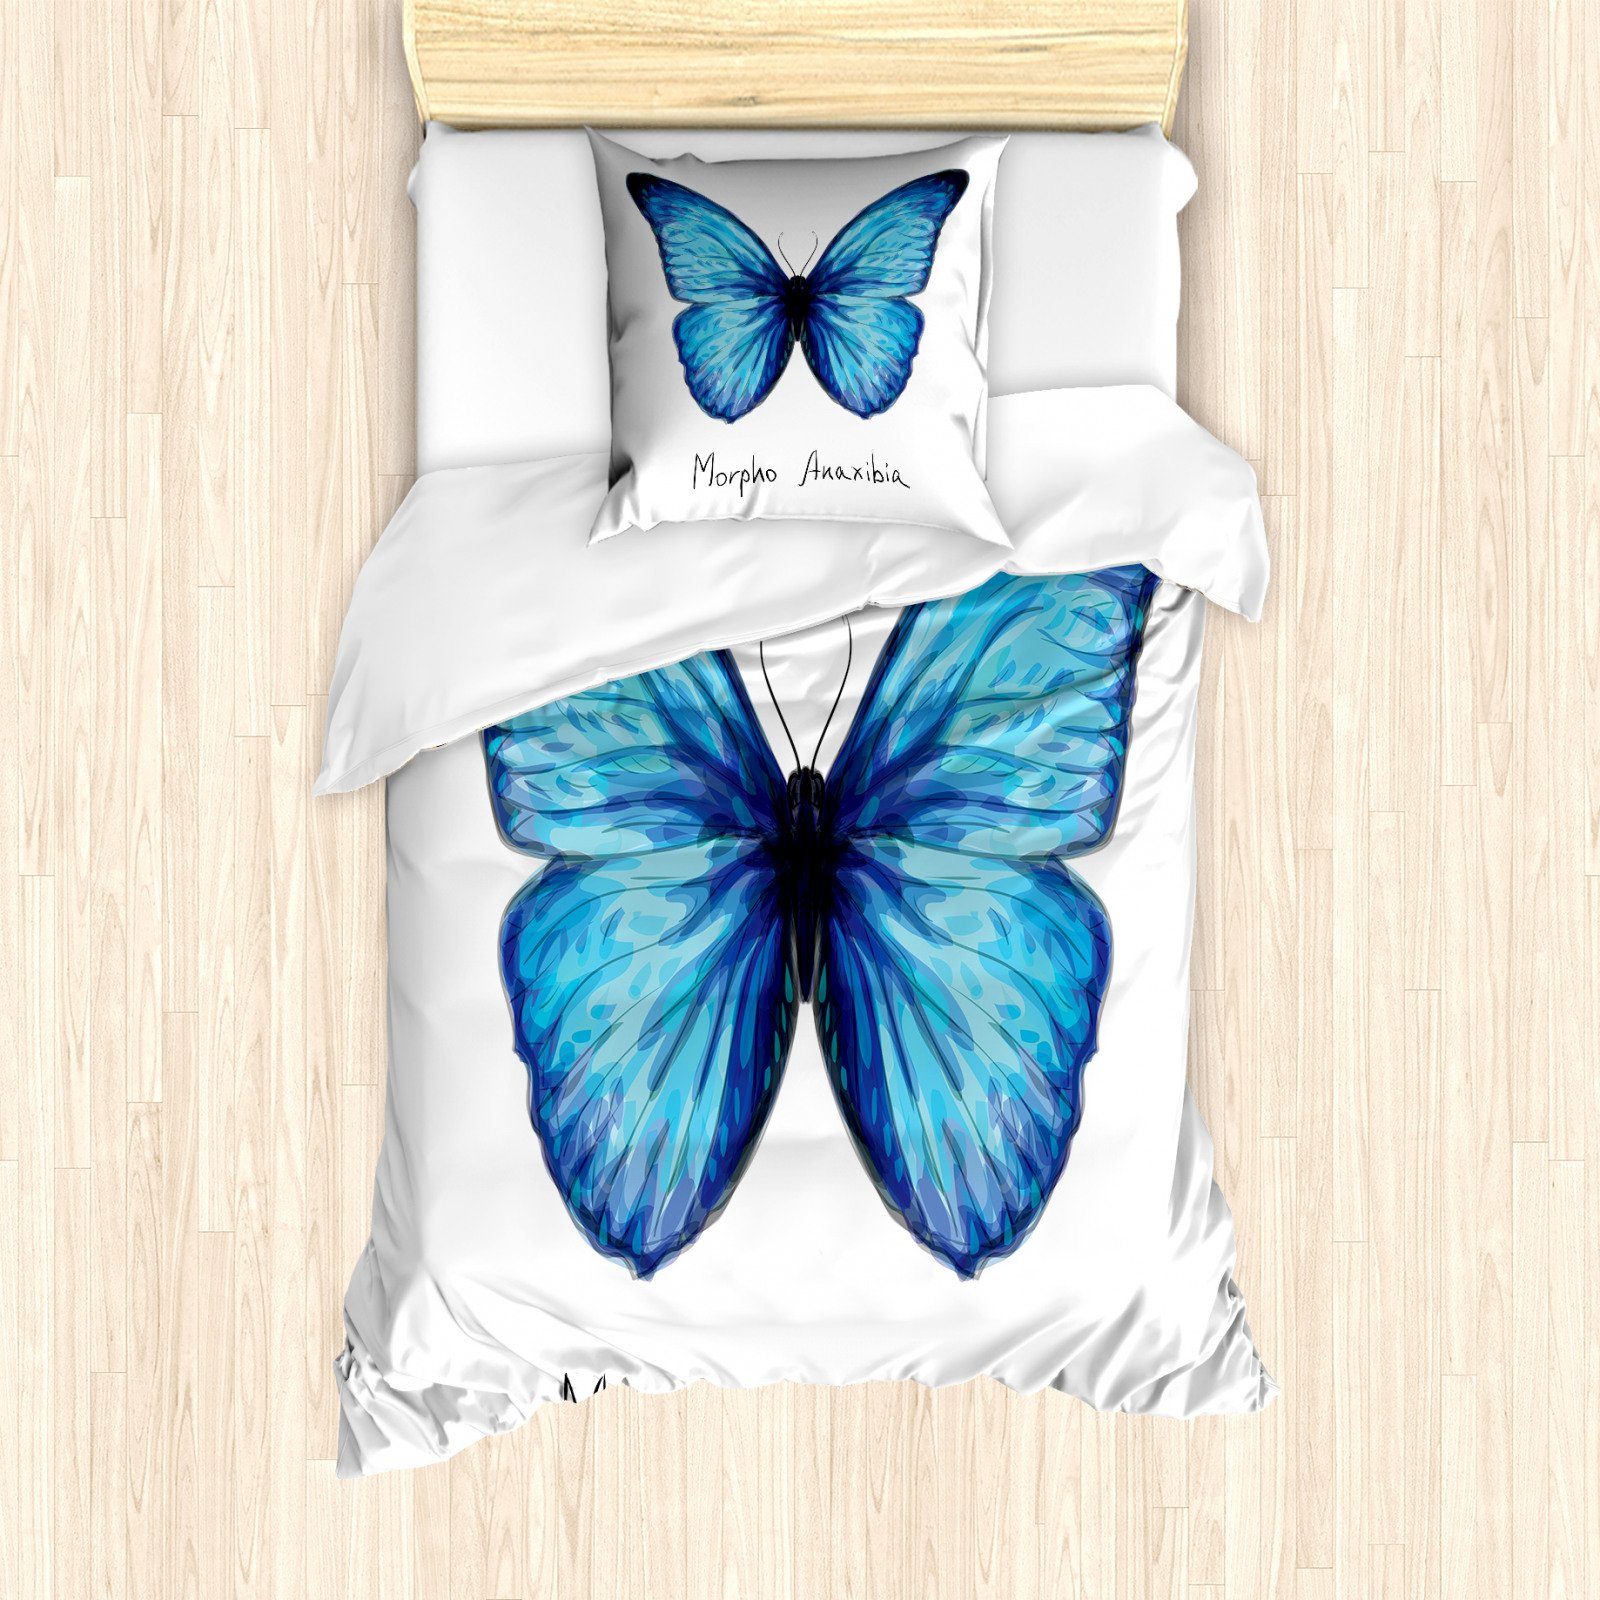 etérea Baumwolle Kissenbezug Kissenhülle 1 teilig 40x80 cm Kissenbezug weich und pflegeleicht Osaka Schmetterlinge Grau